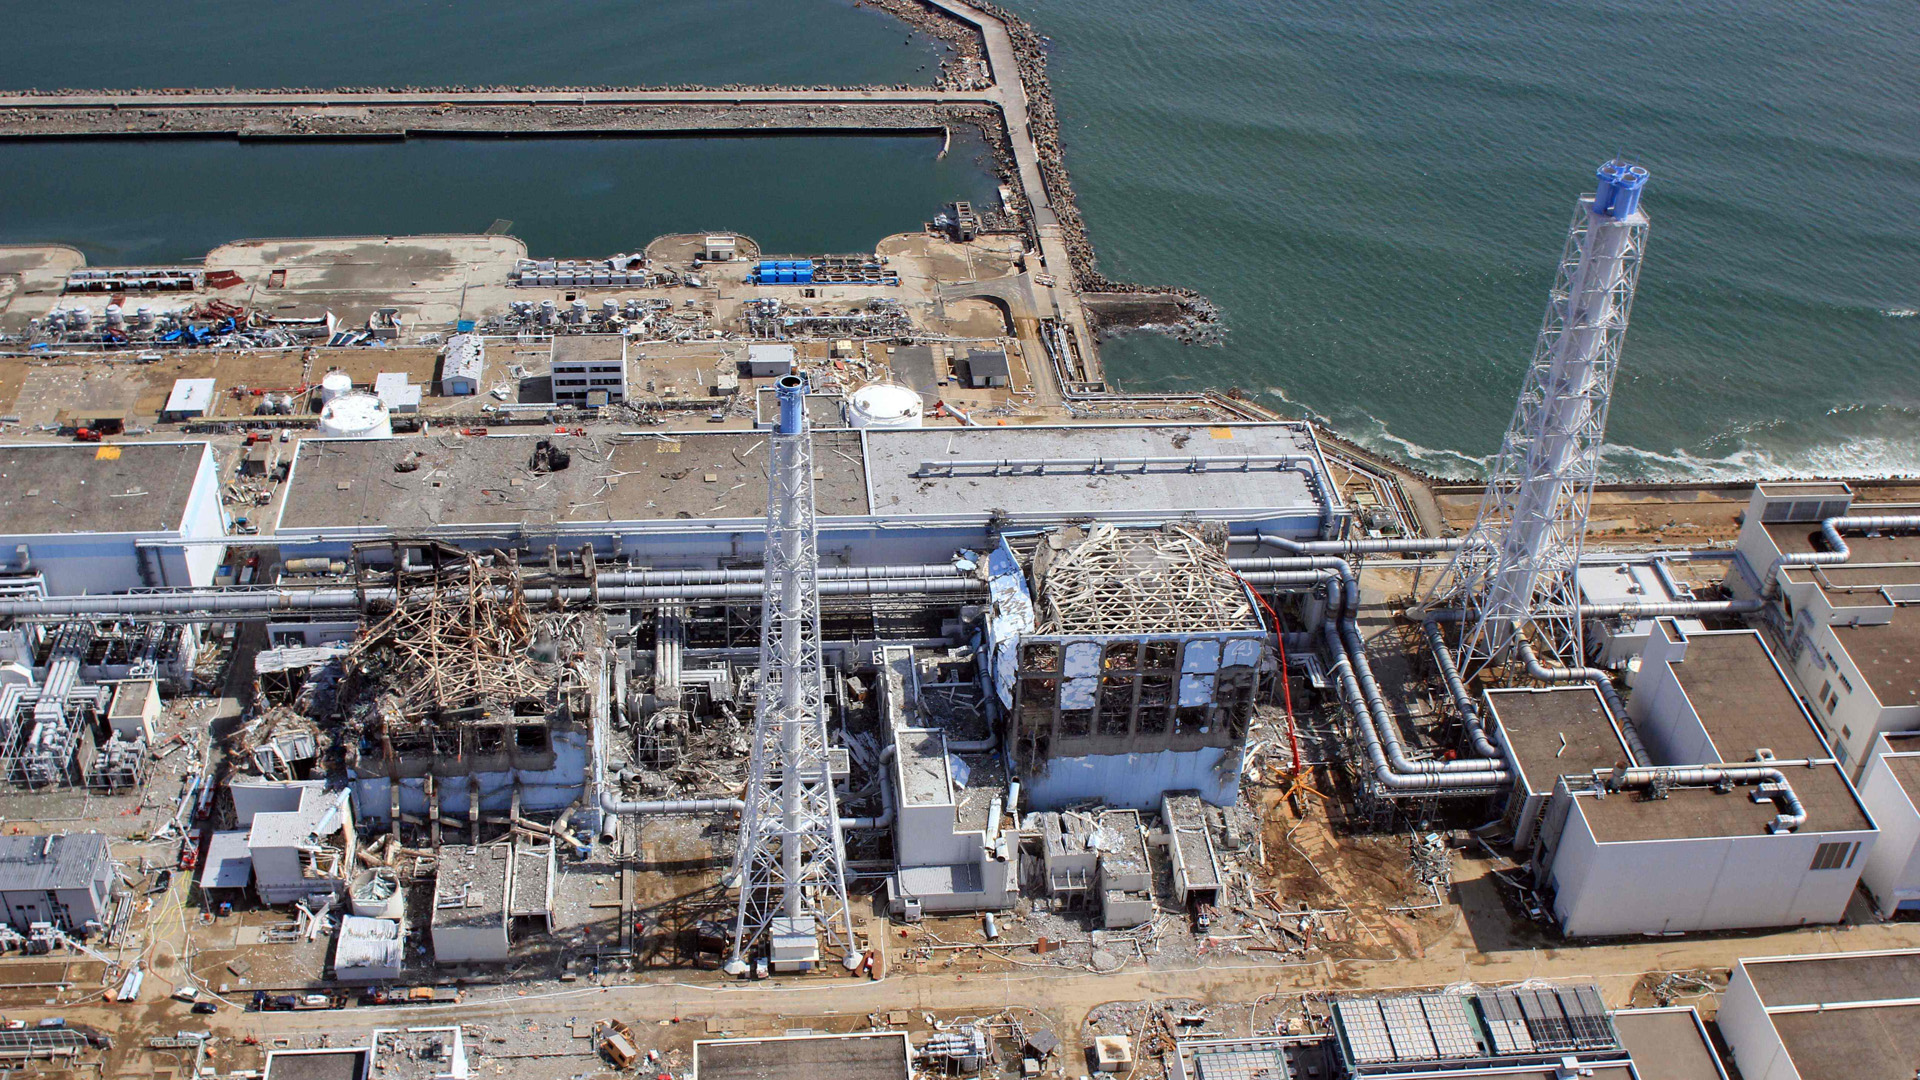 Atomunfall in Fukushima: Gericht spricht Aktionären Milliarden zu